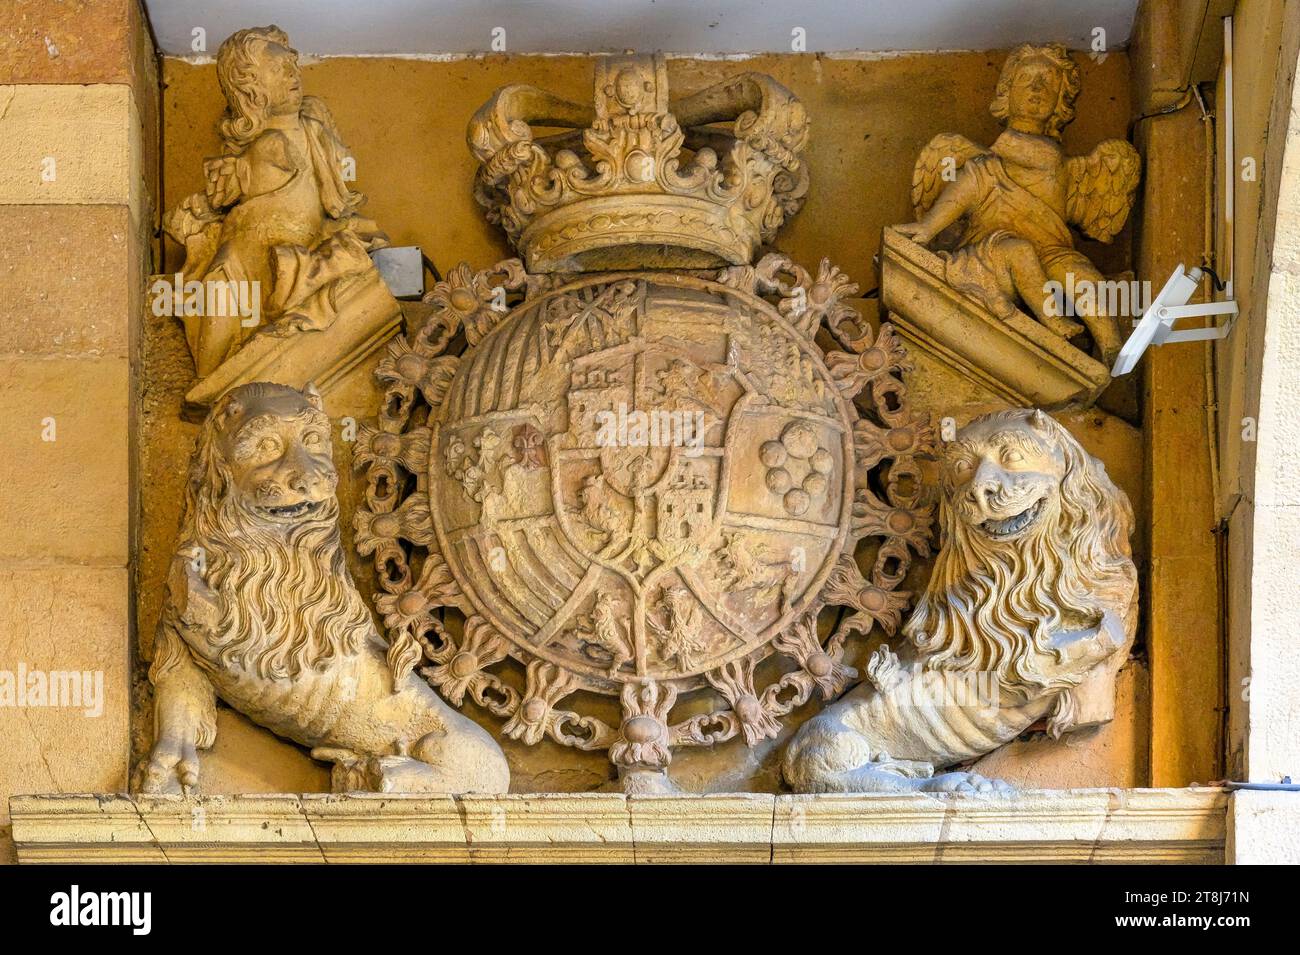 Oviedo, Espagne, armoiries sculpture en pierre. Peut-être sur la place Fontan. Armoiries sculptées en pierre avec lions et couronne Banque D'Images